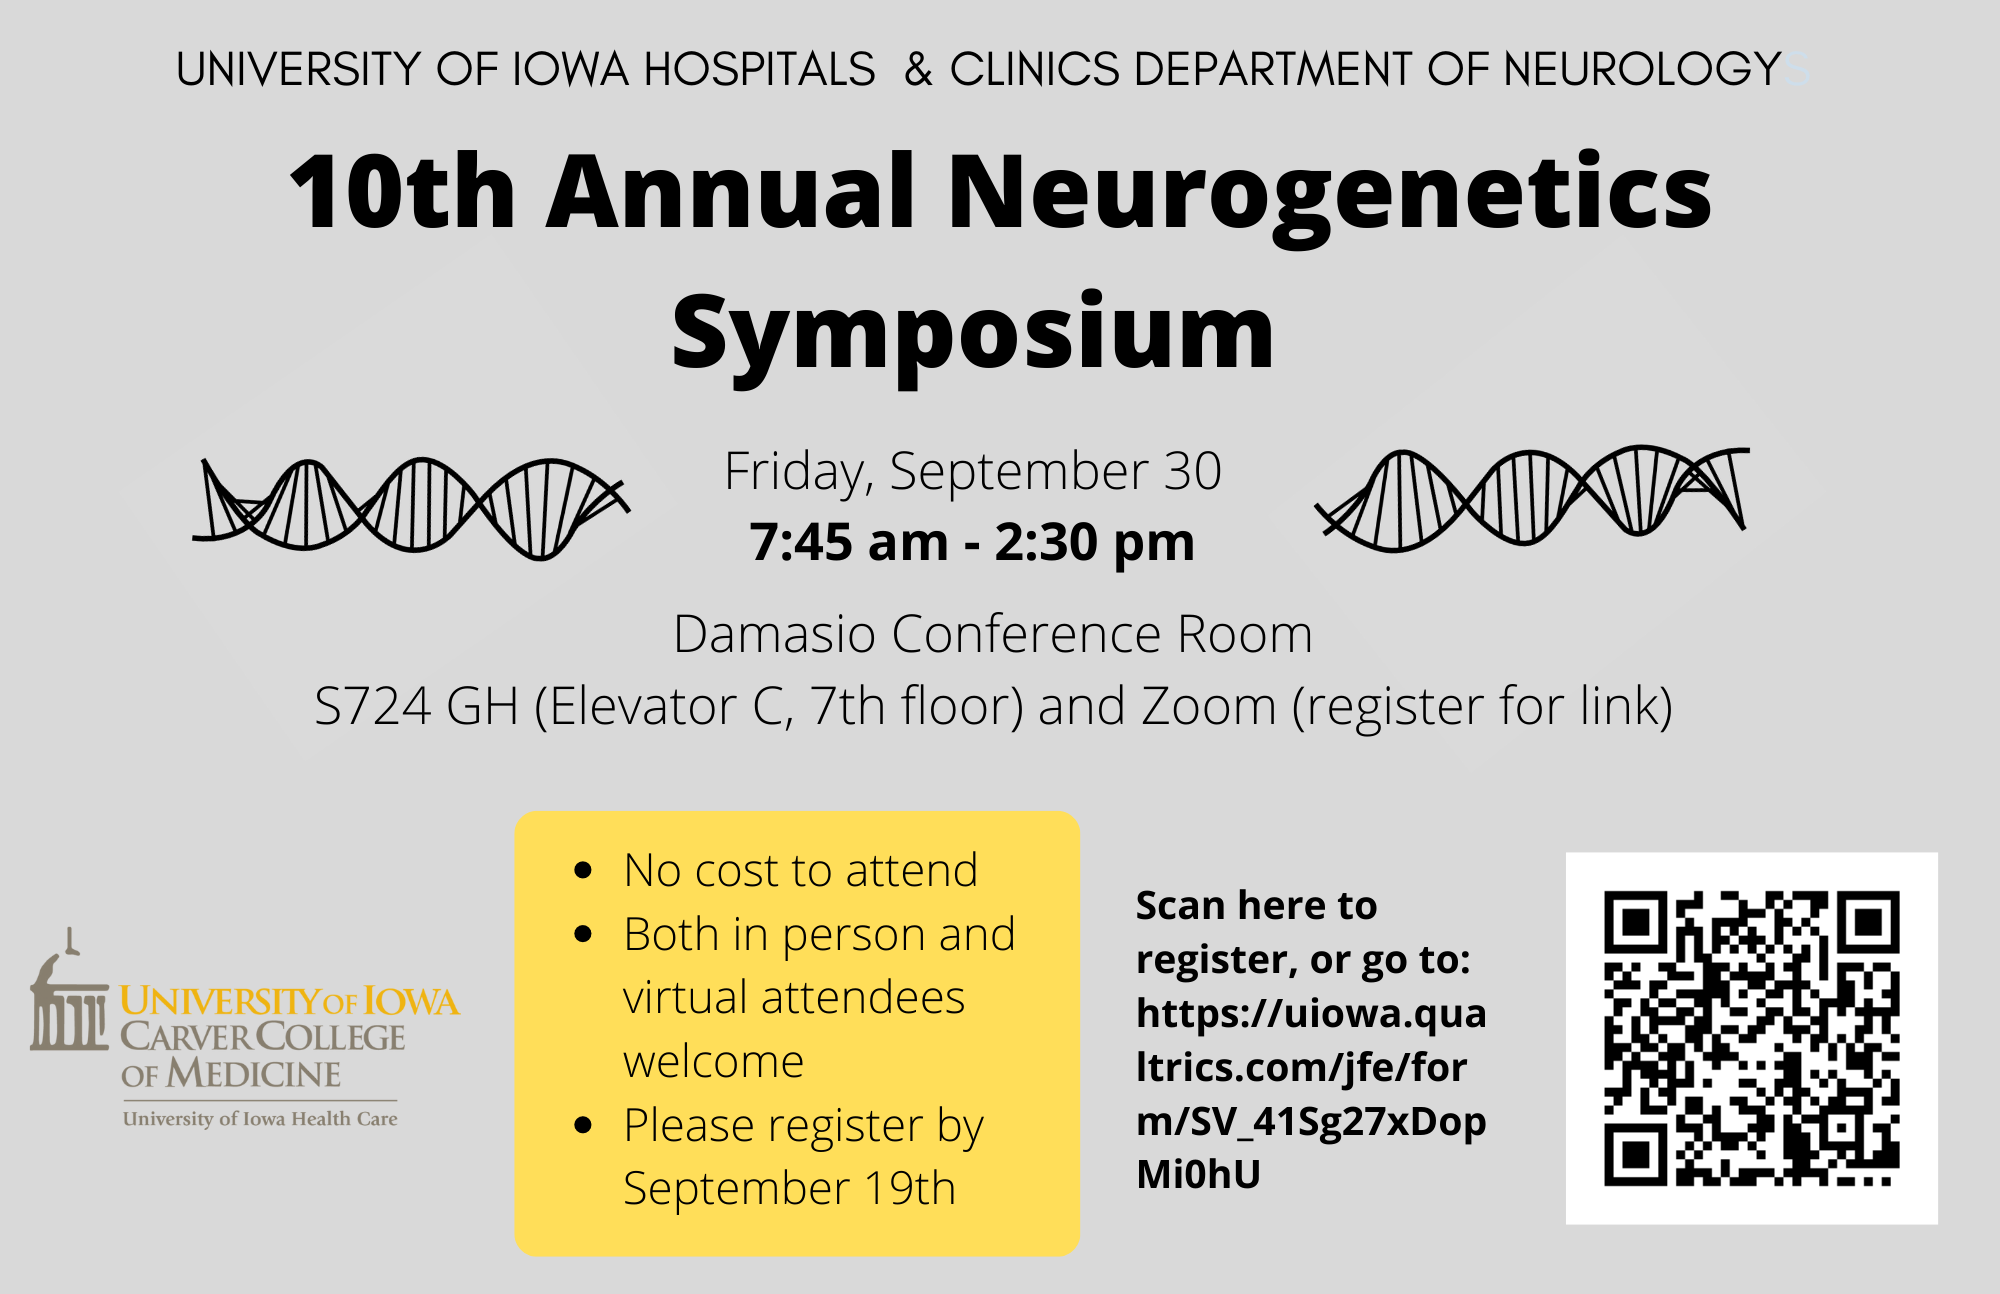 10th Annual Neurogenetics Symposium Flyer 